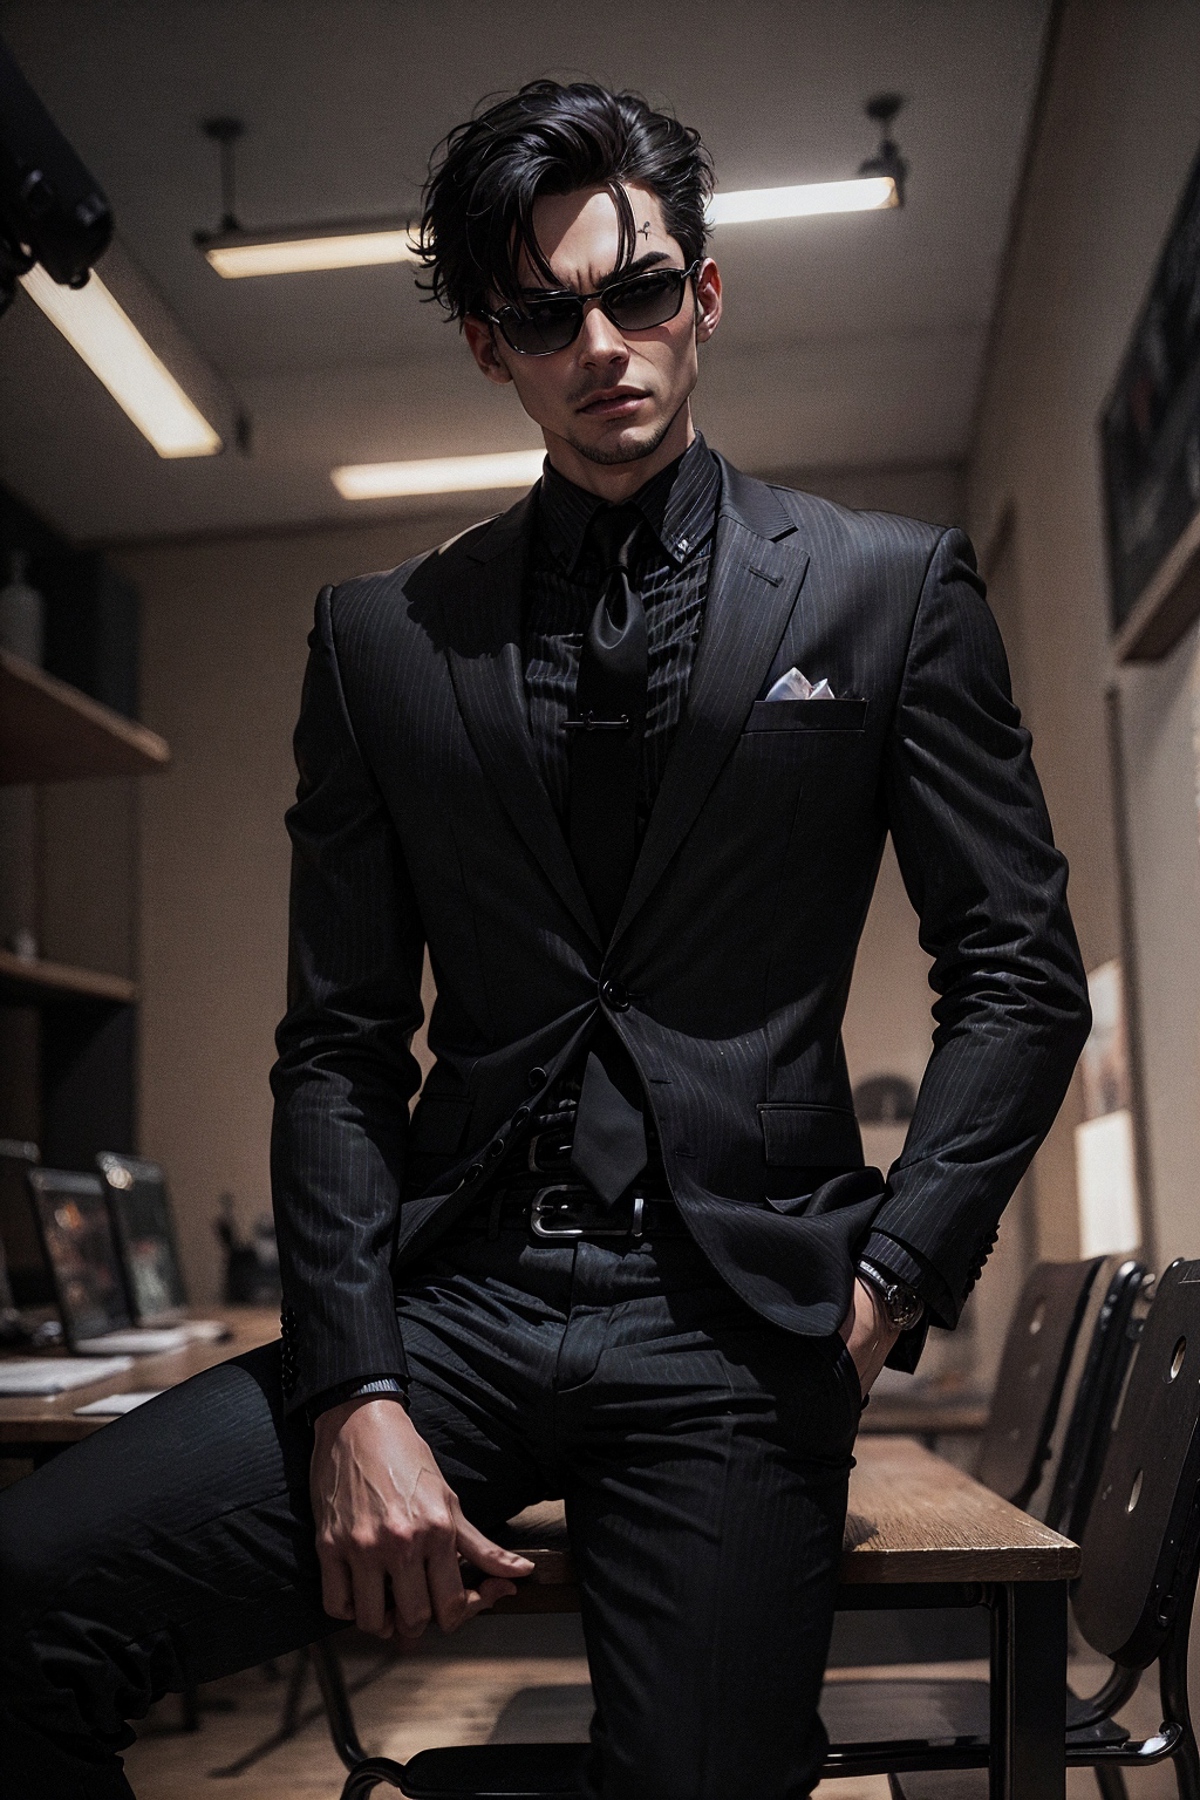 All Black Suit | Attire image by PotatCat